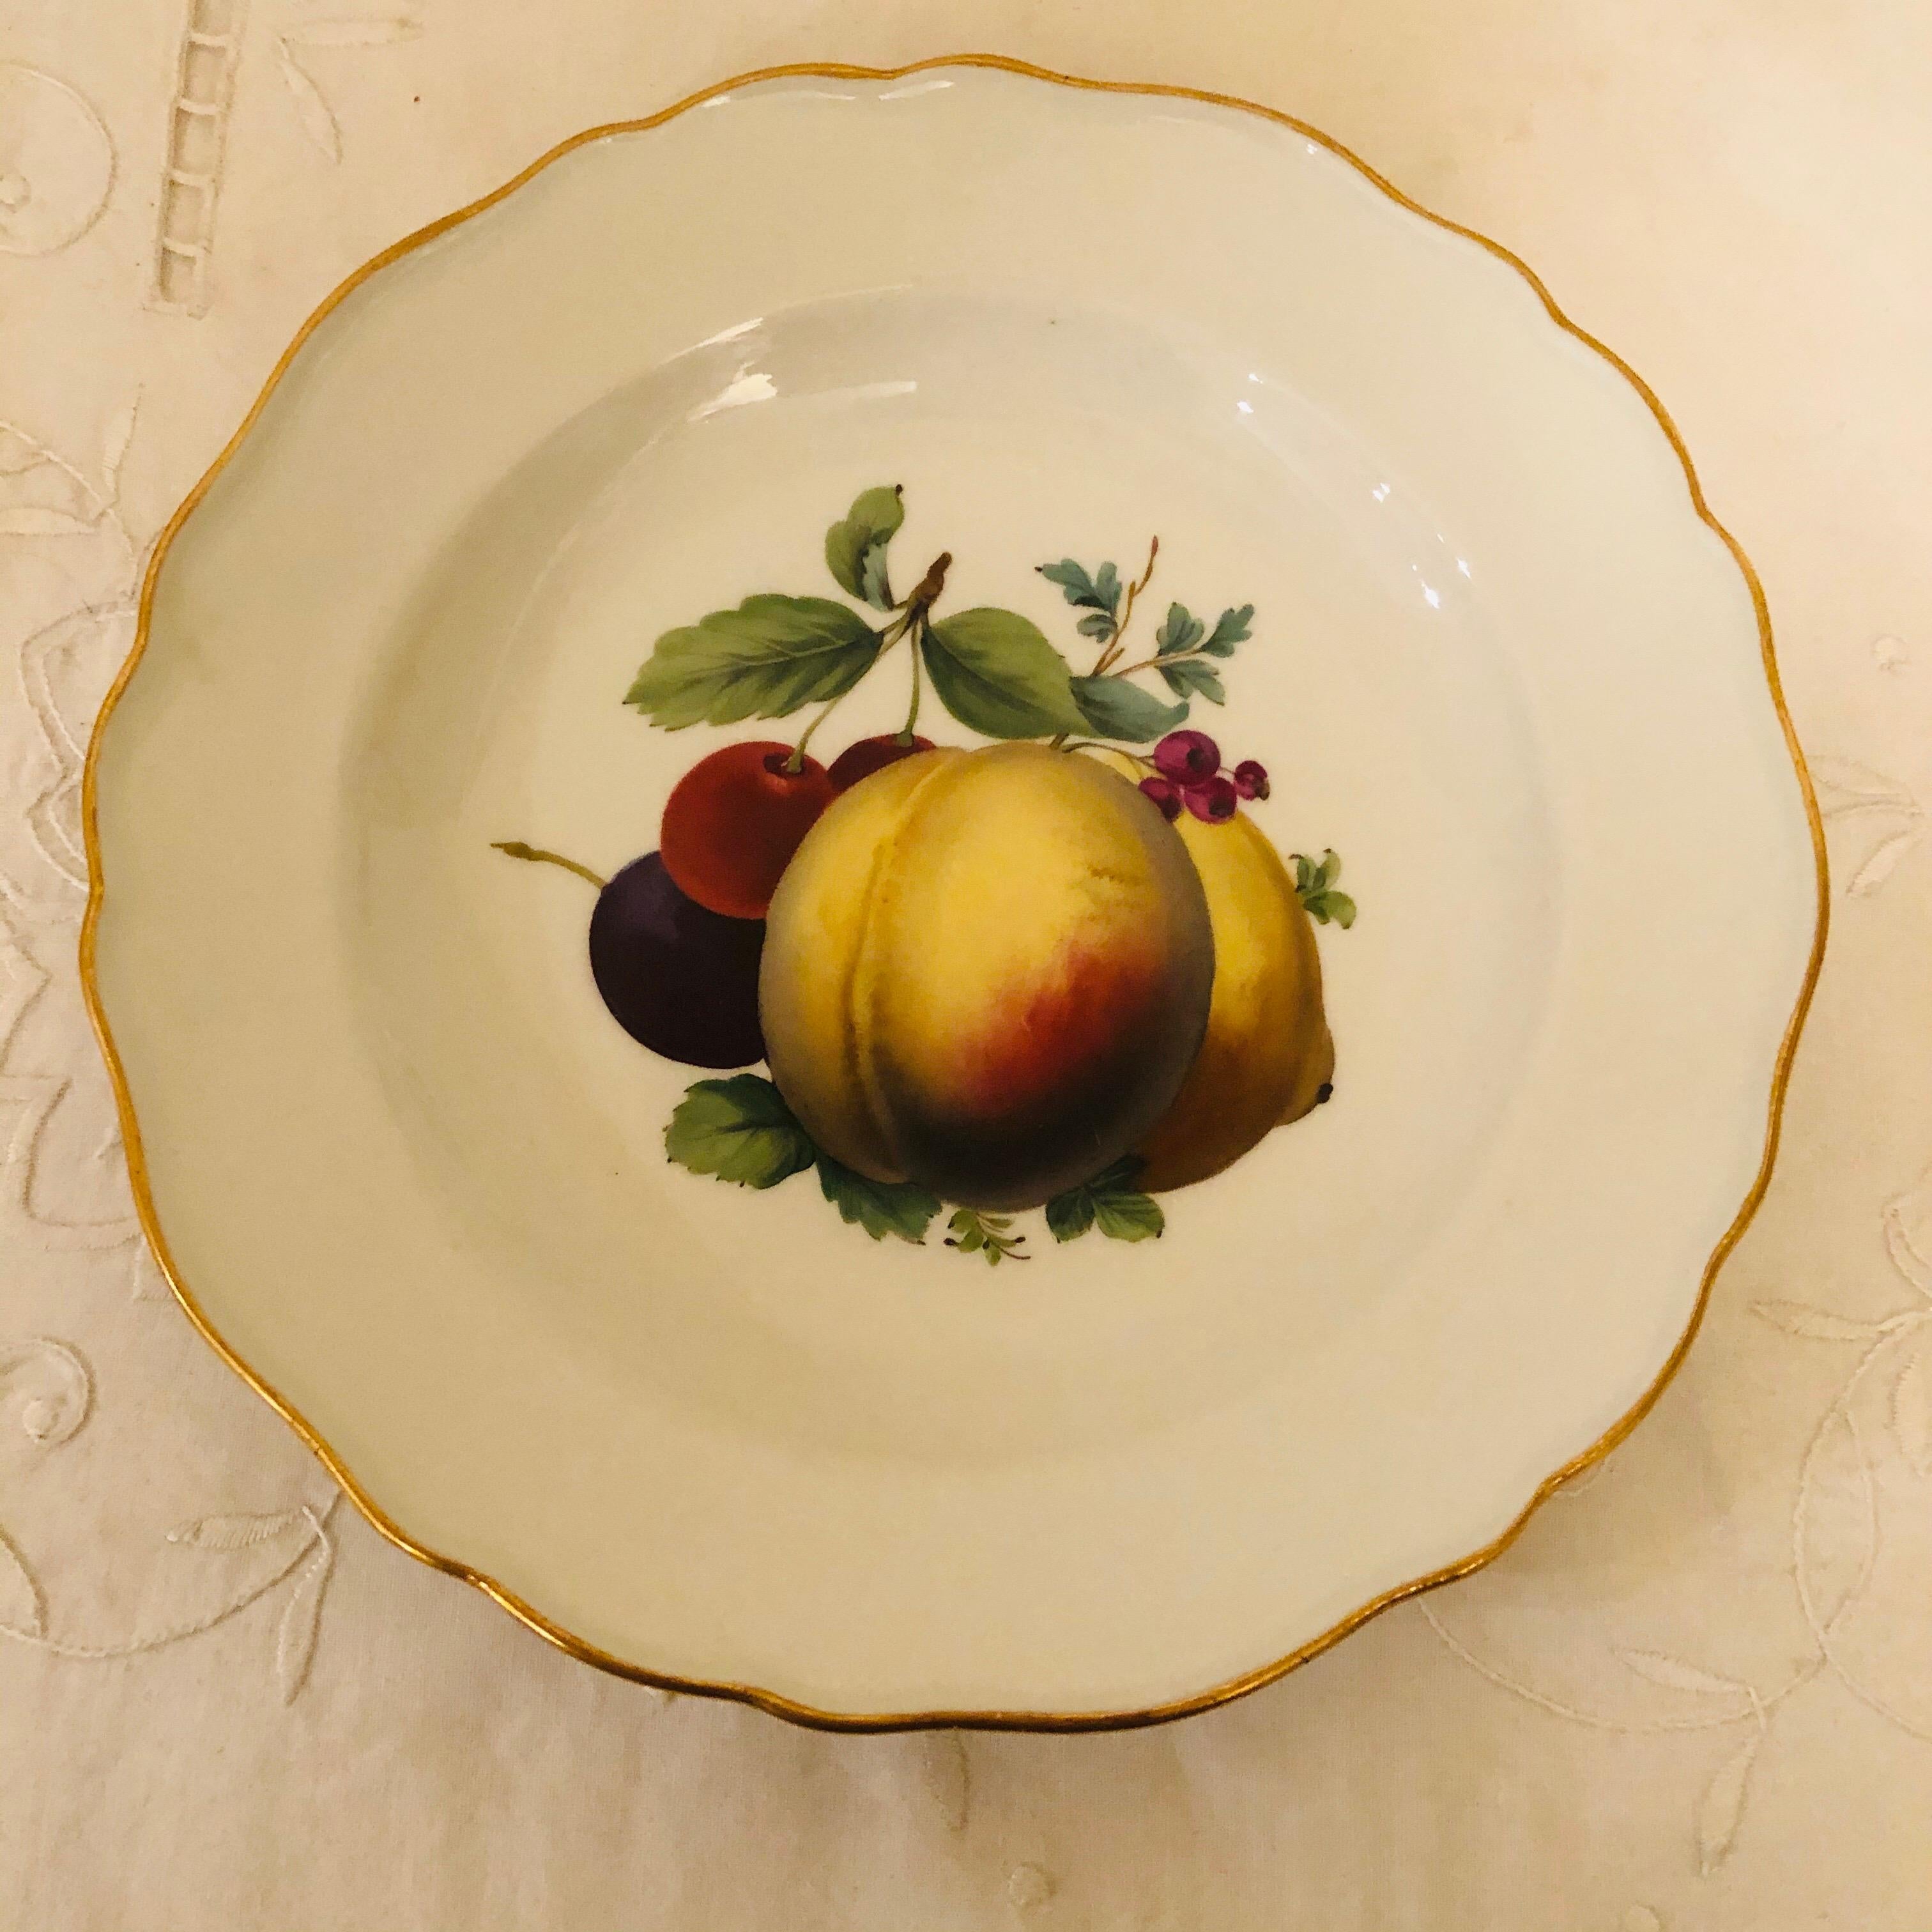 Il s'agit d'un magnifique ensemble de douze assiettes à dessert de Meissen, chacune peinte de façon magistrale avec différentes peintures de fruits. Ils datent des années 1880 et sont tous des Meissen de première qualité. Les peintures des fruits